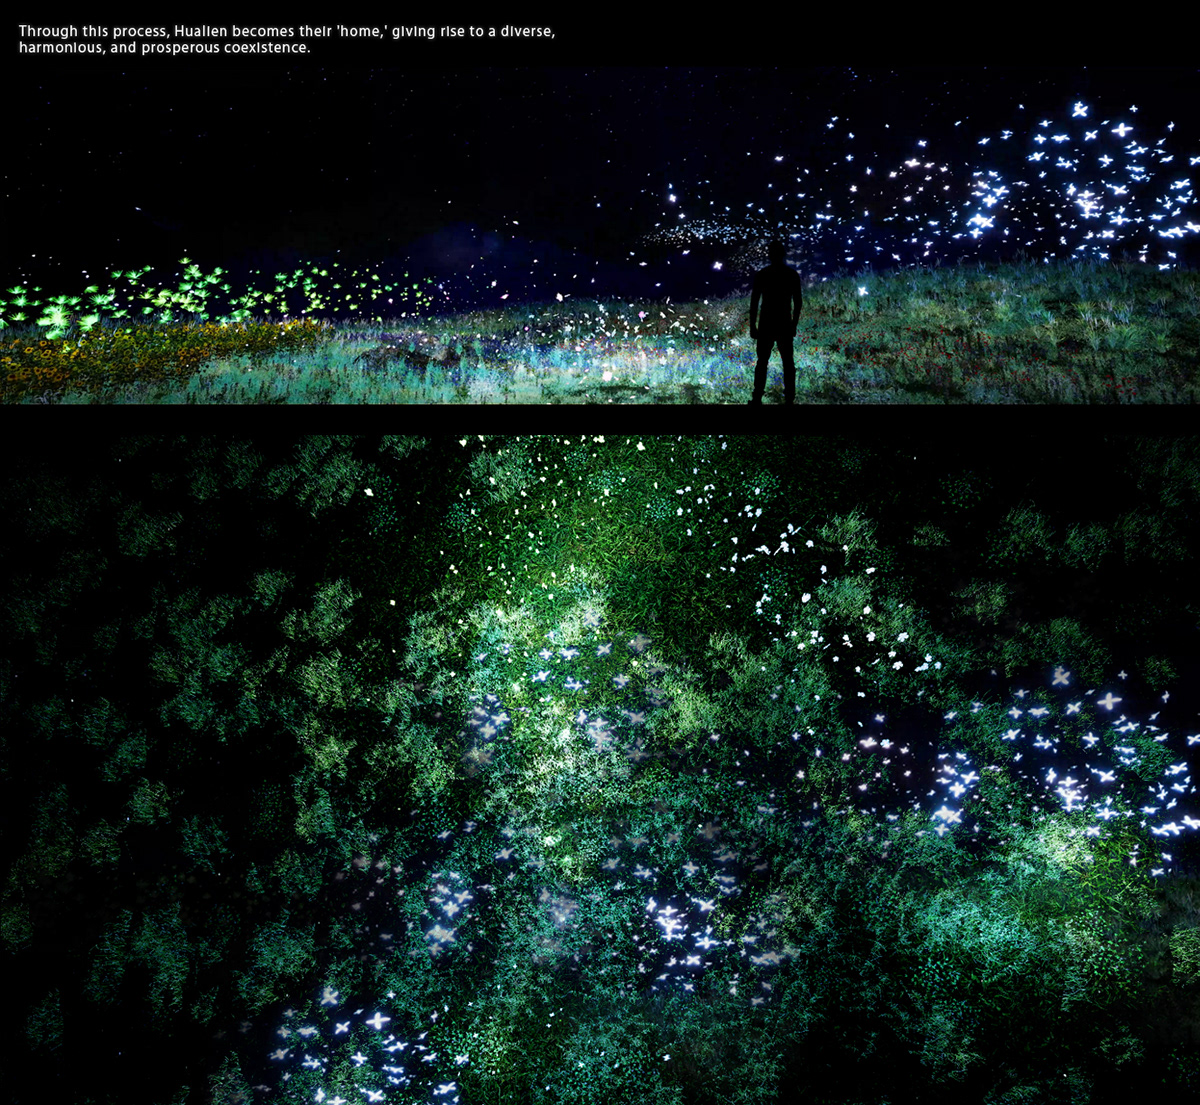 視覺設計 visual design animation  projection art immersive story hakka taiwan